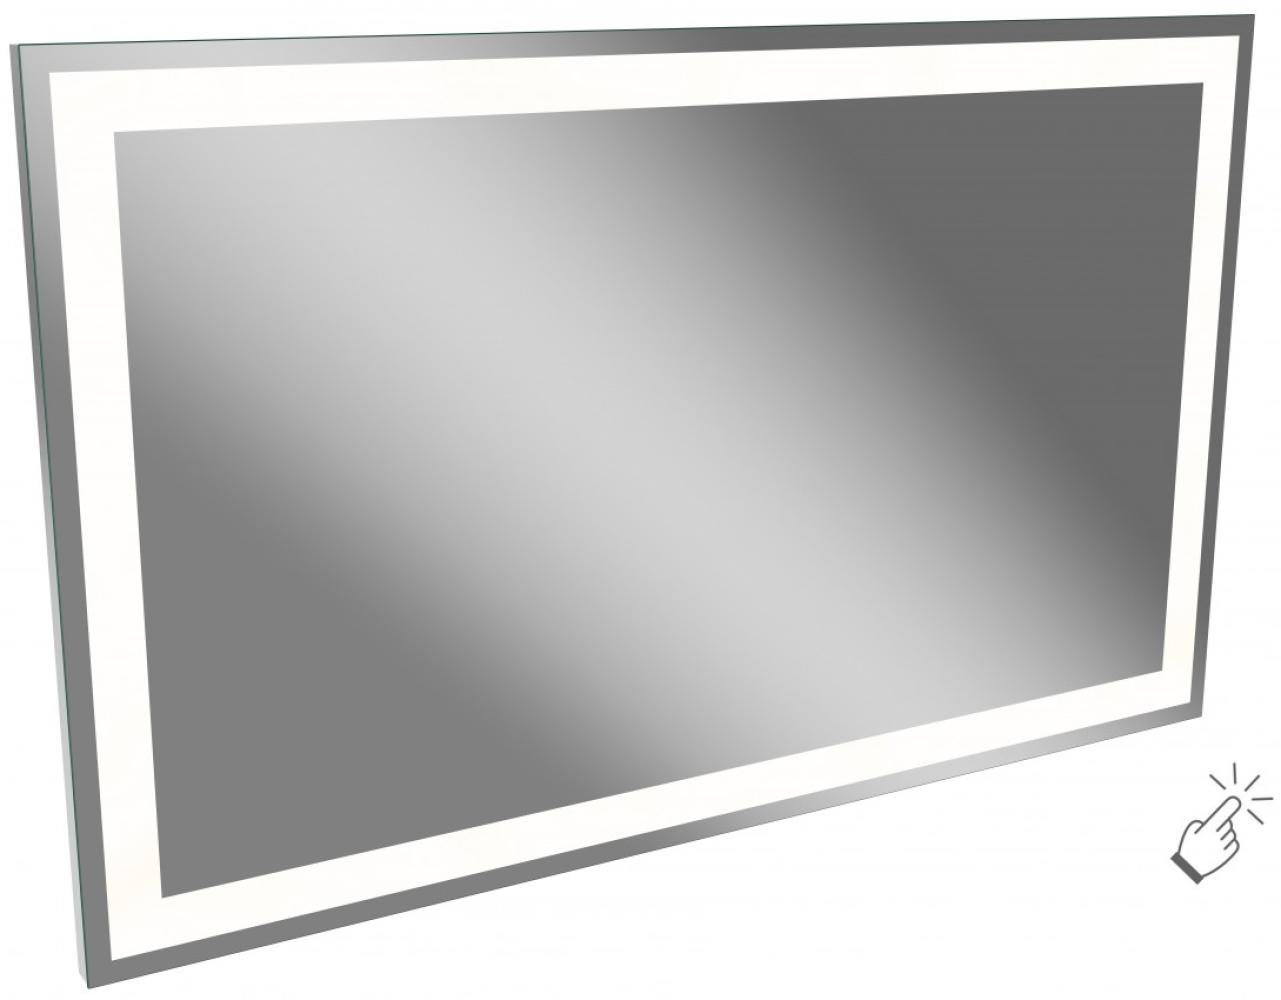 Lanzet P5 Spiegelelement 138 cm Bild 1